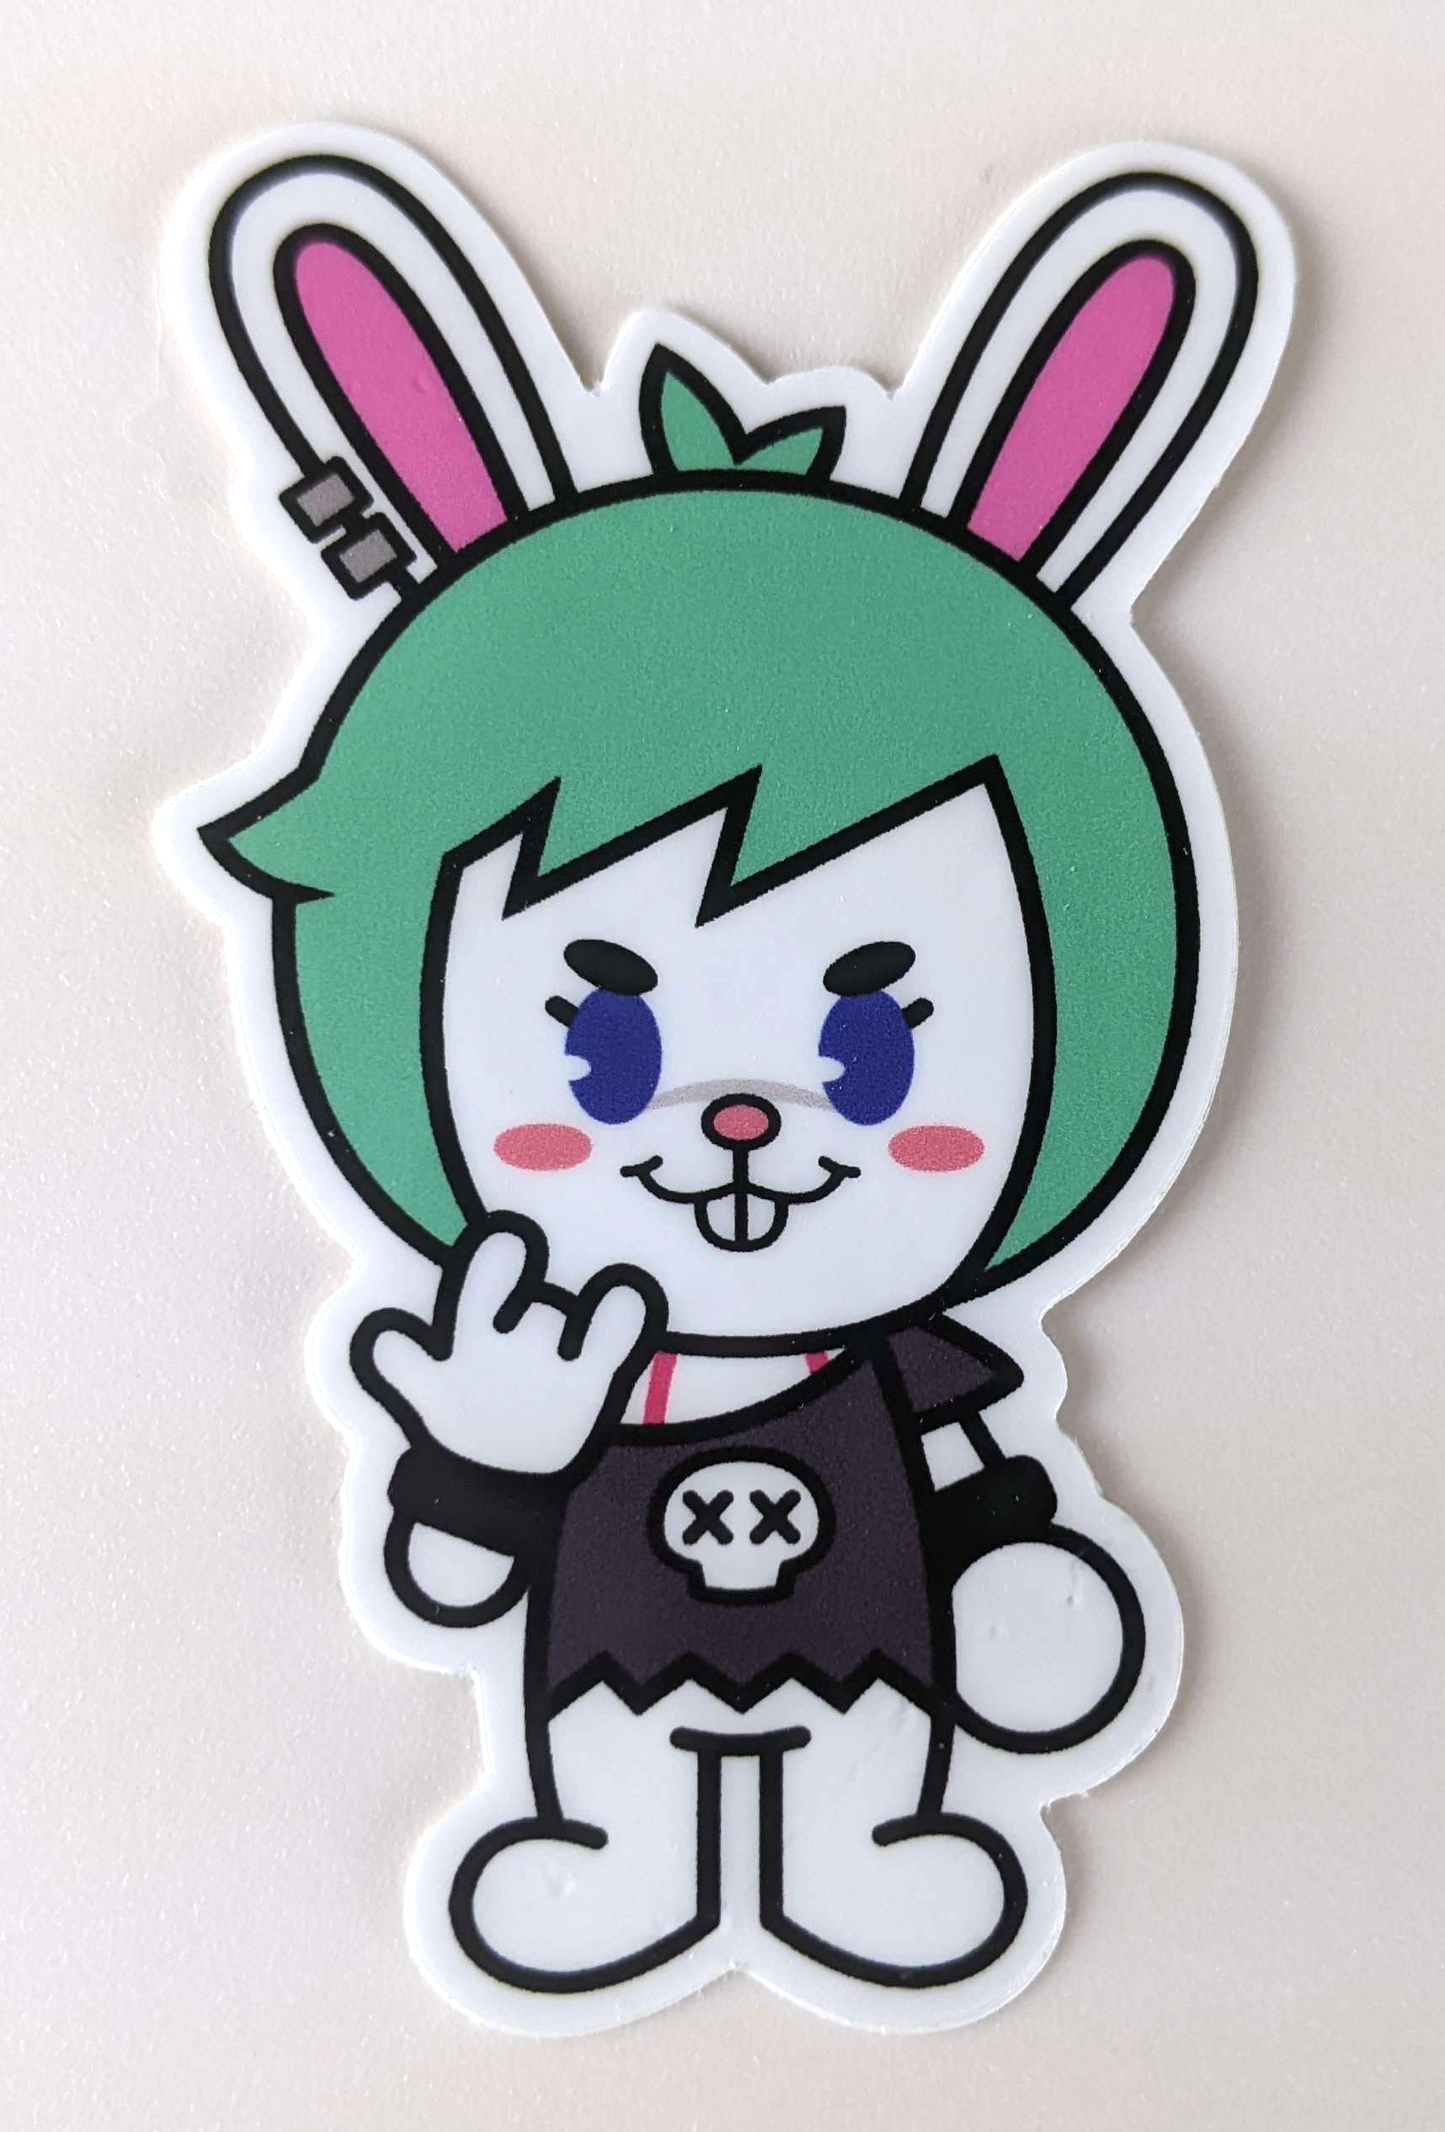 Pepper the Rockin' Rabbit (Vinyl Sticker)